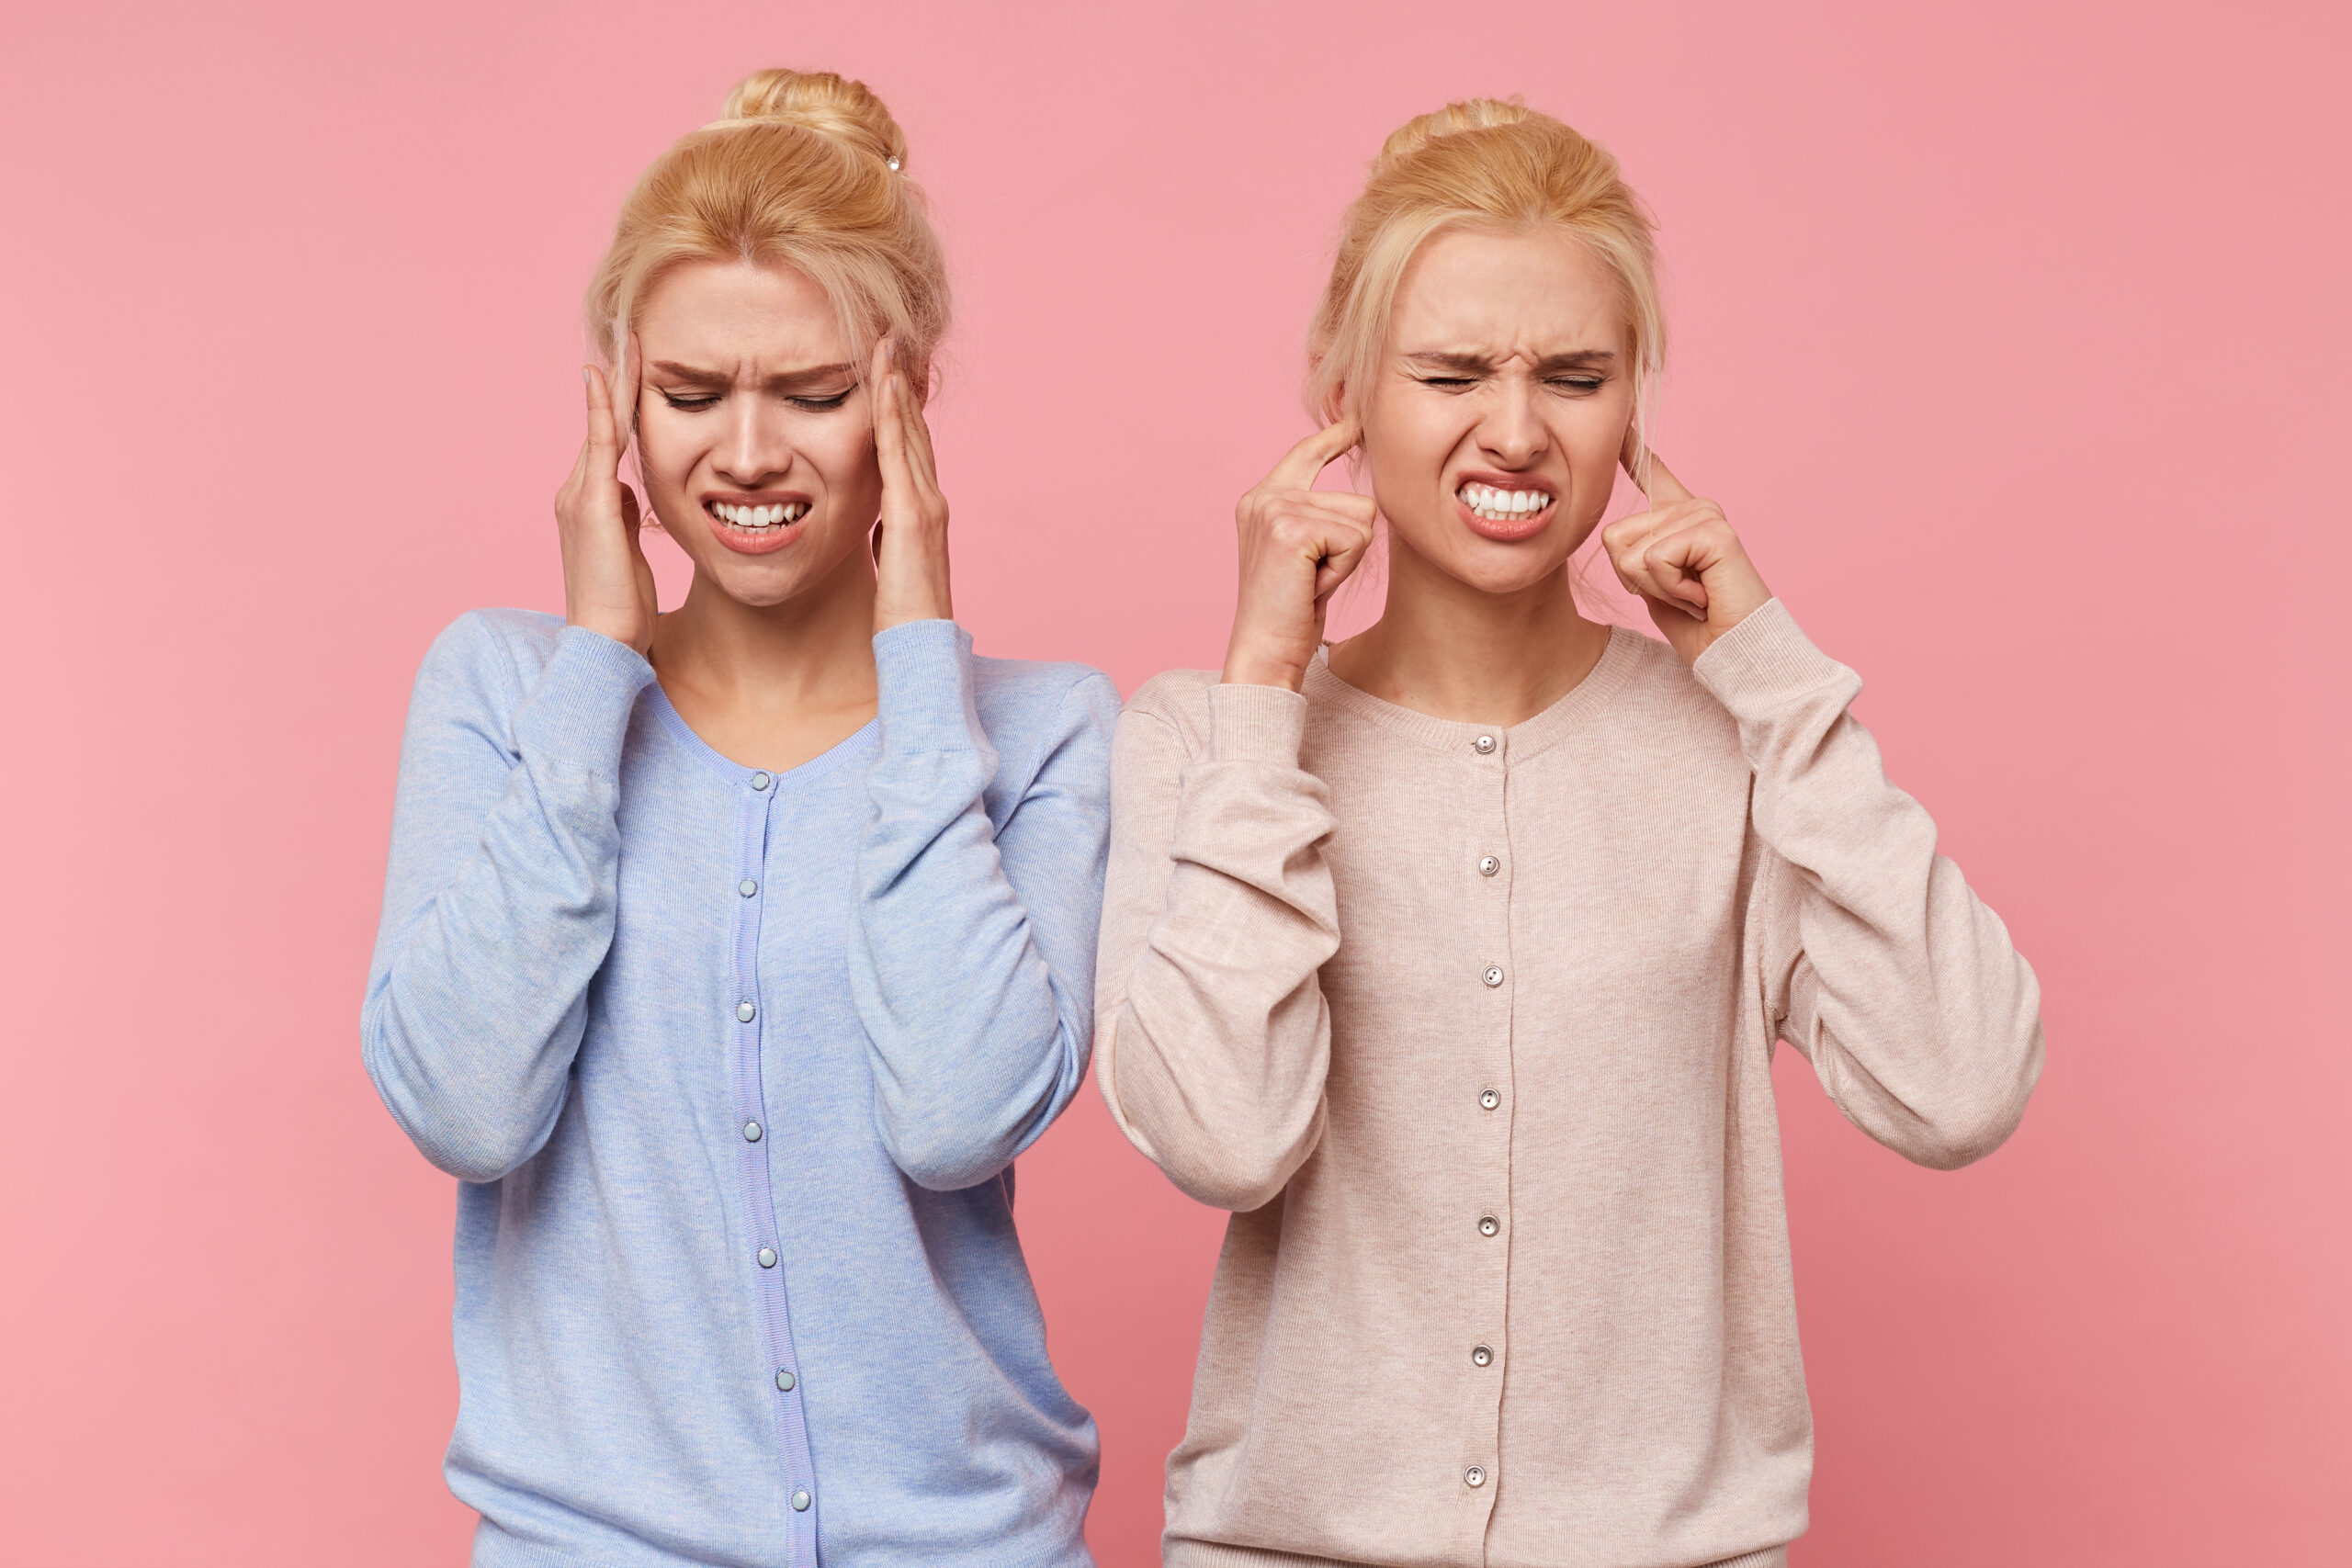 Slika dve devojke sa tinitusom koje se drže za uši